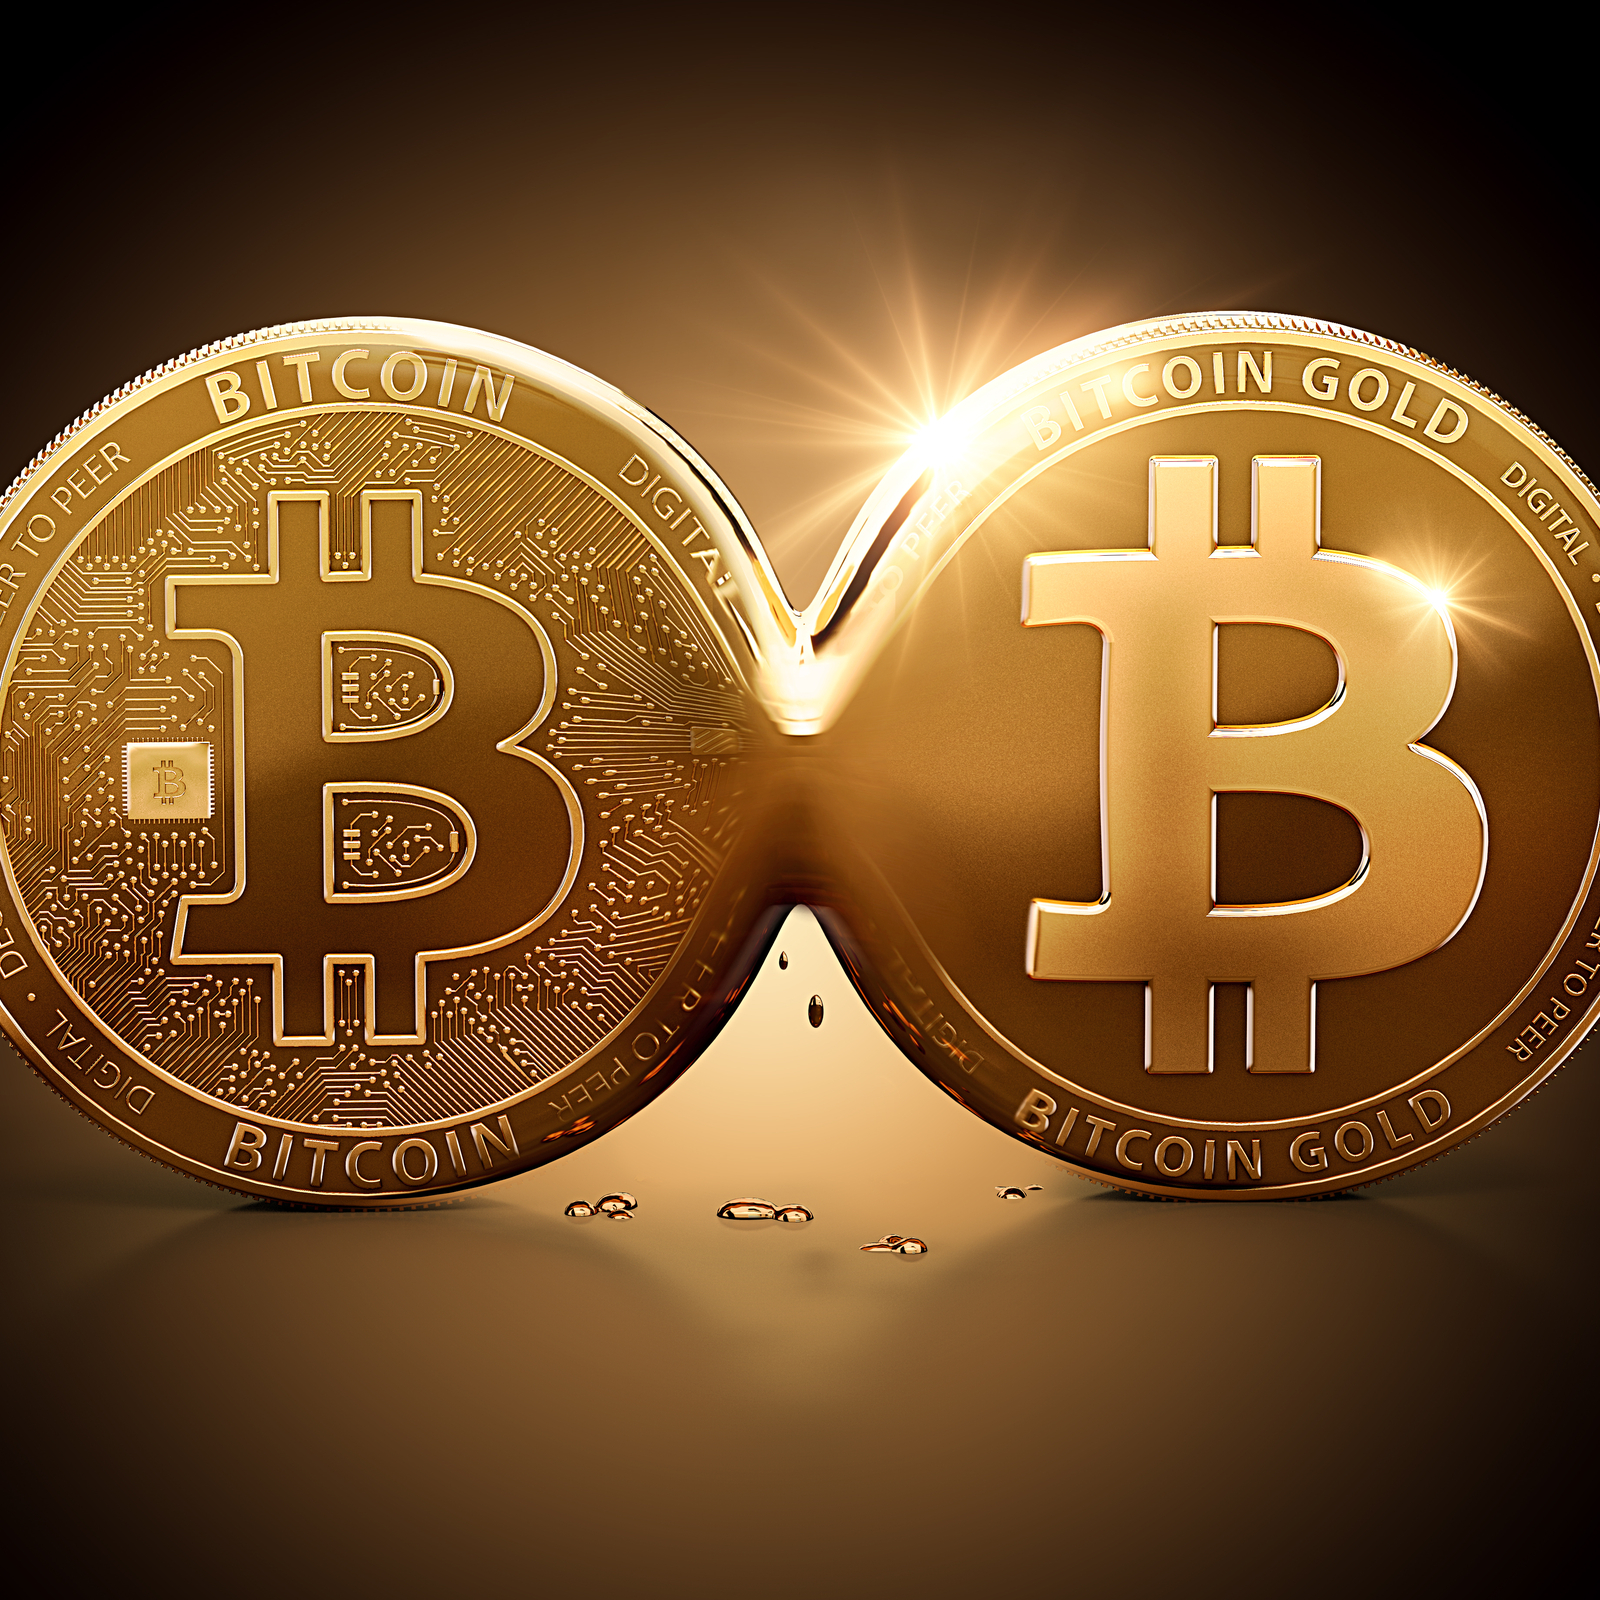 Bitcoin Gold: en fallstudie om kryptovalutans säkerhetsproblem